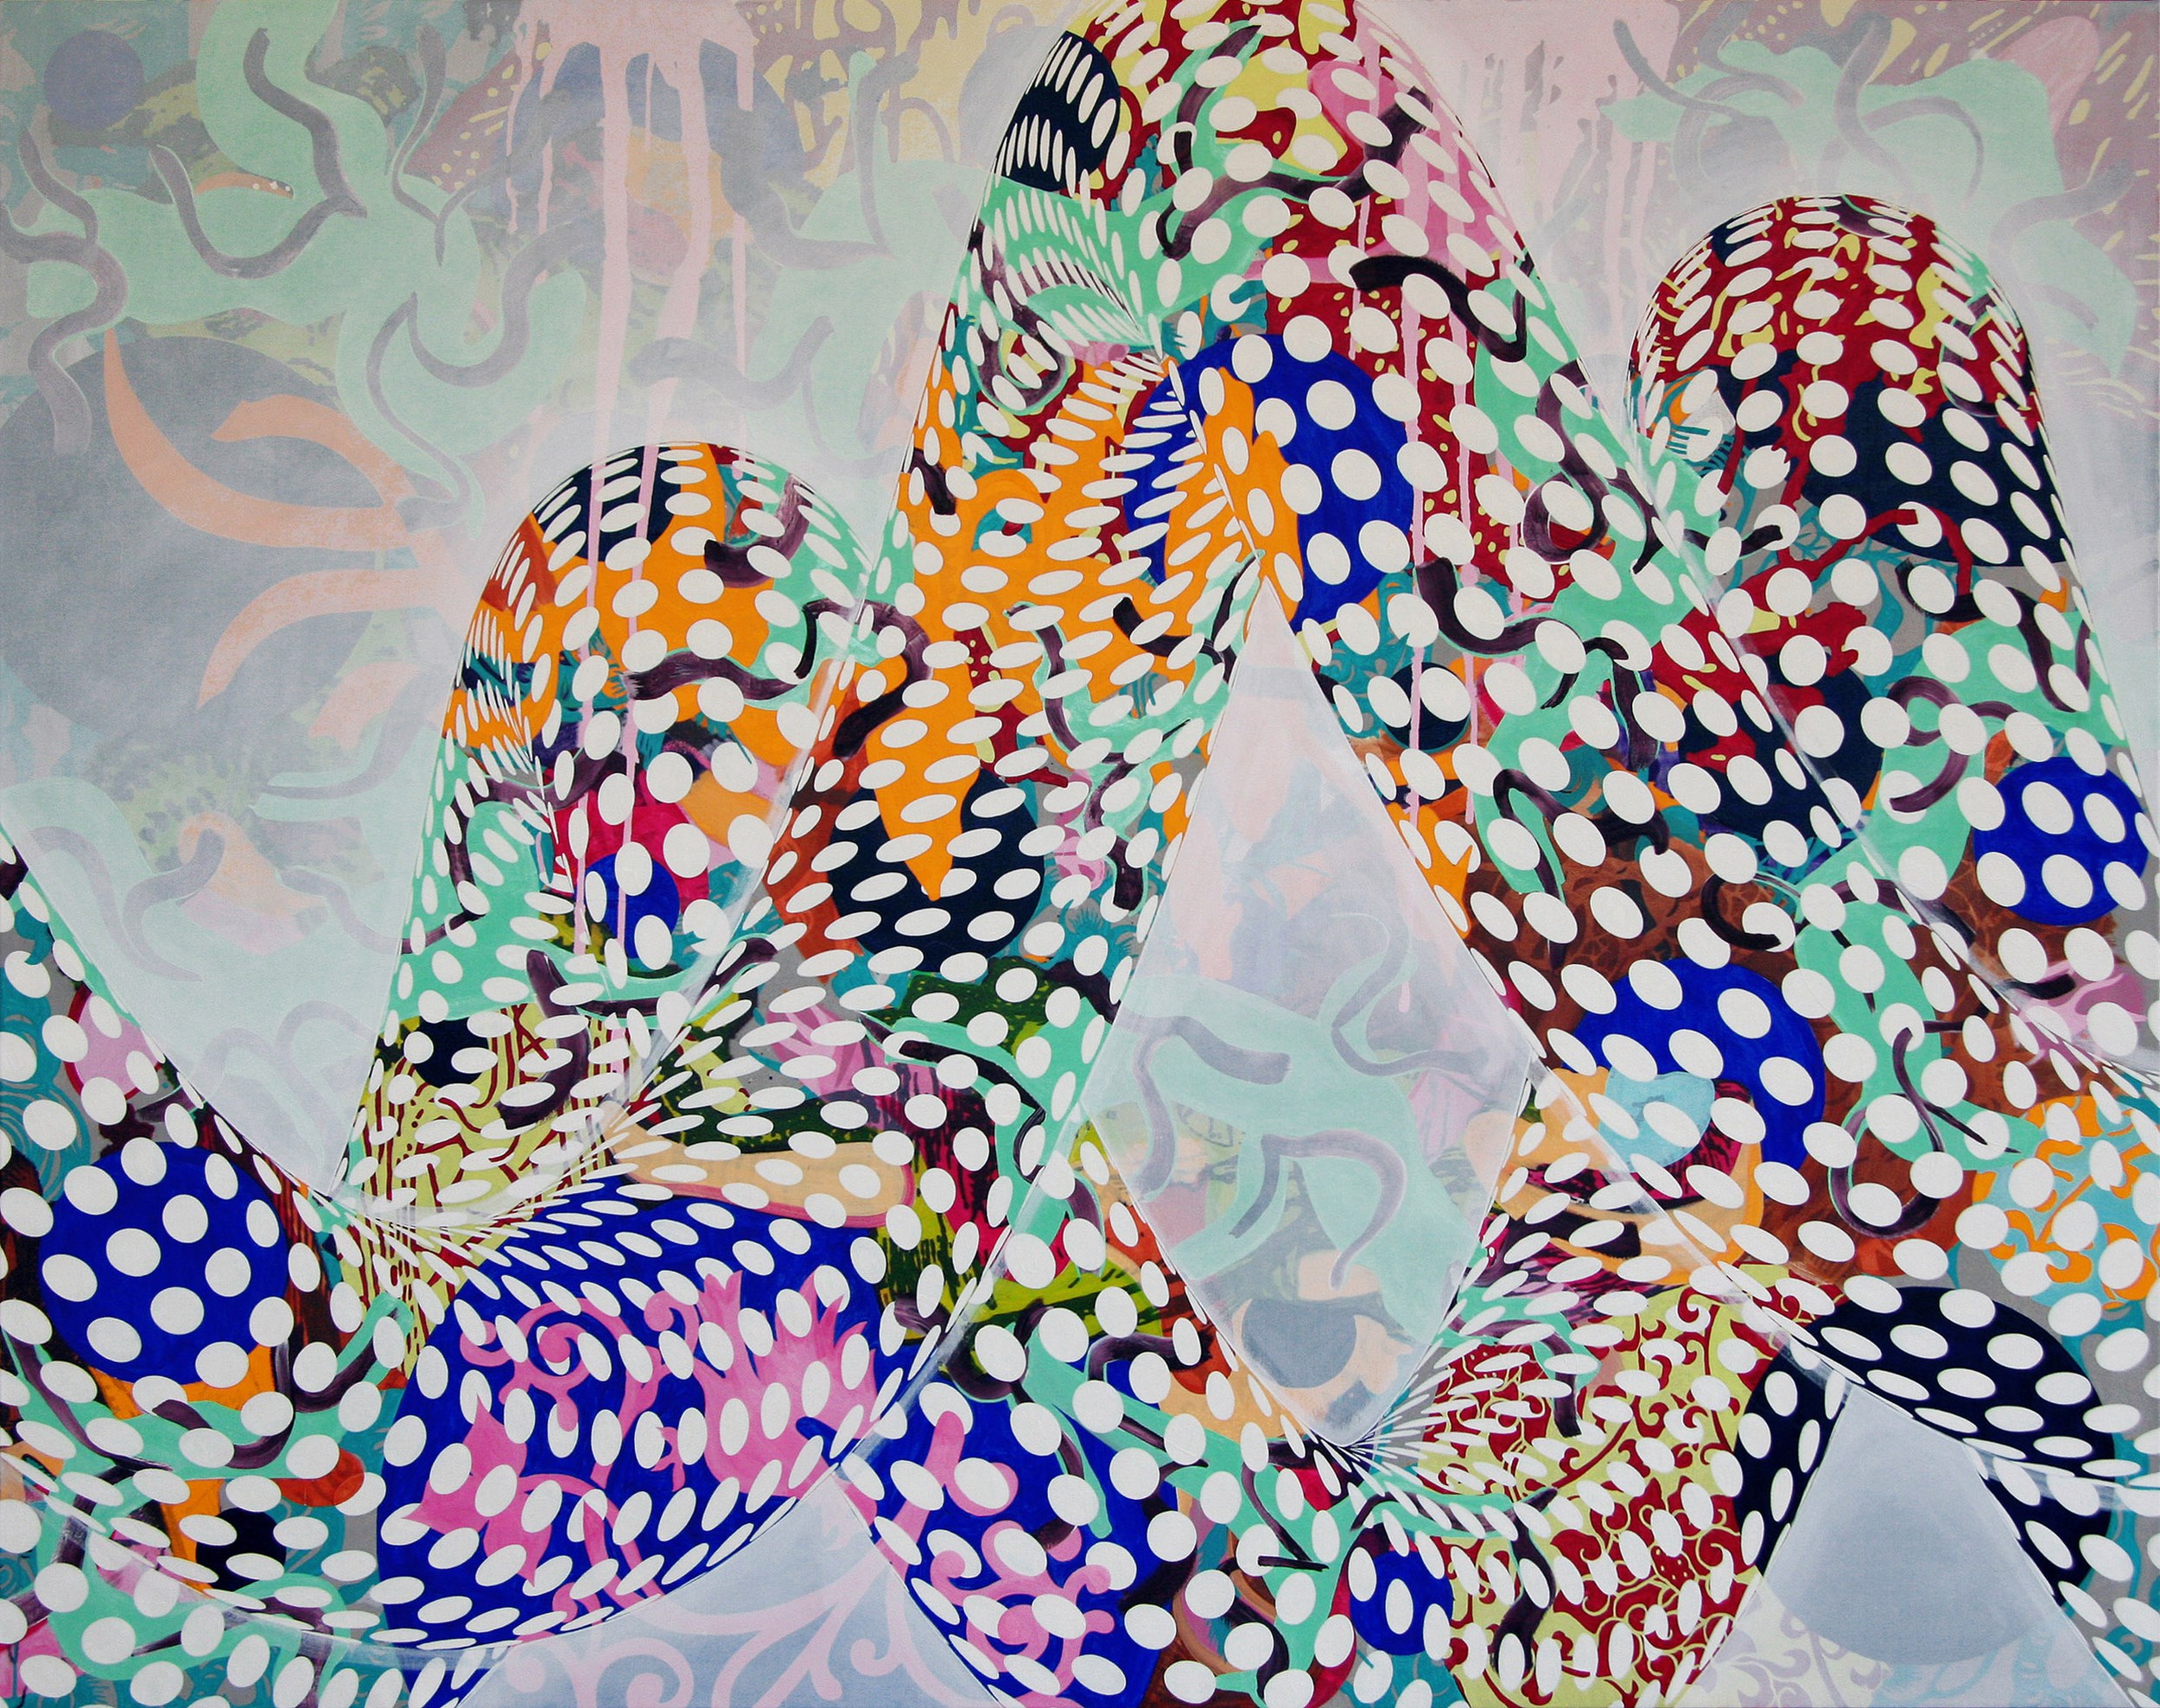 Loop #02, 2012, óleo y acrílico sobre lienzo, 185 x 232 cm.